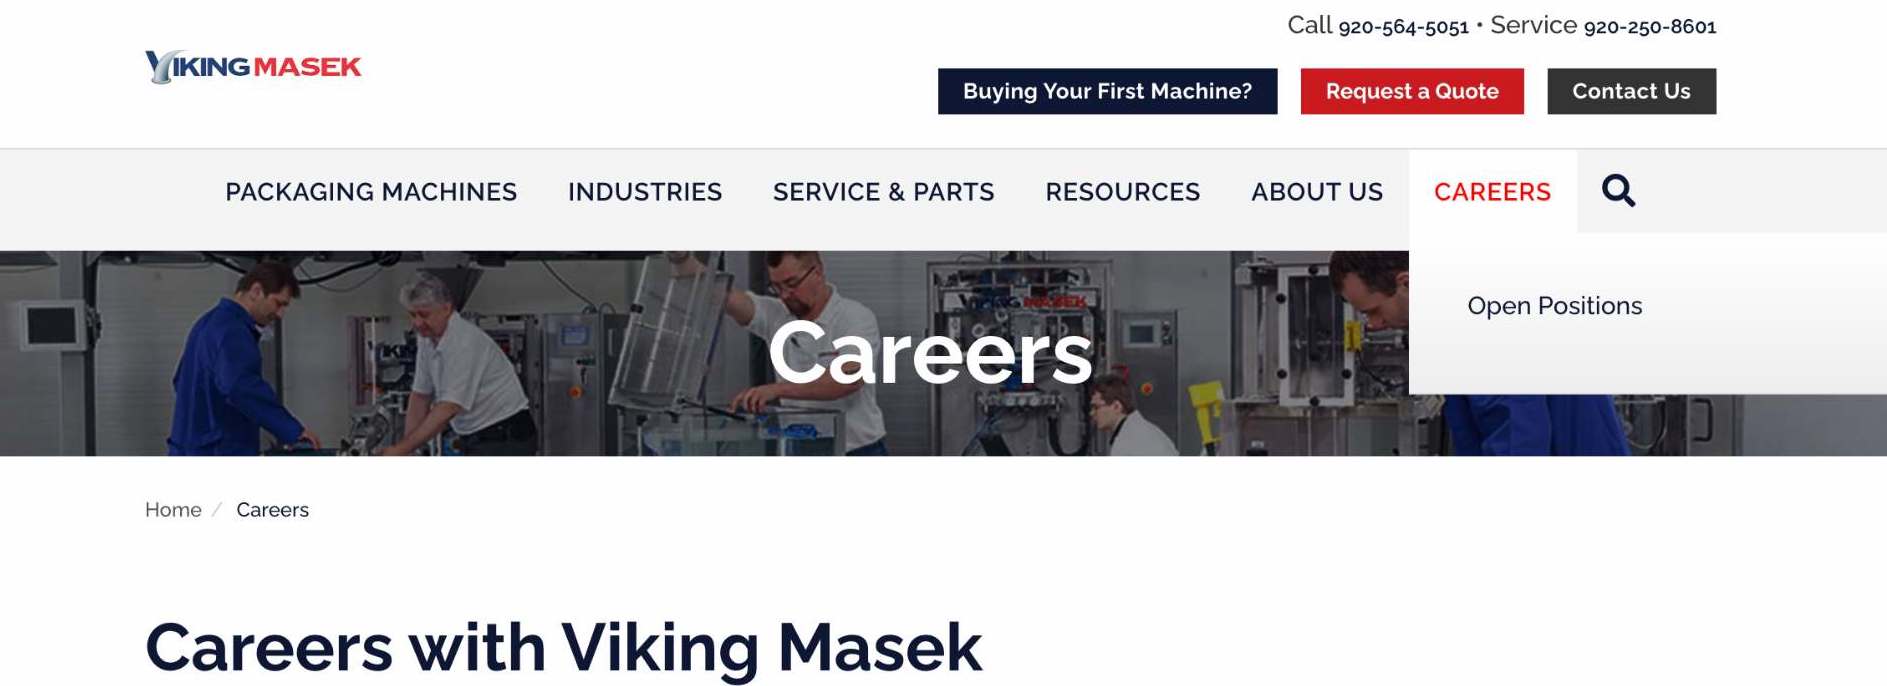 Viking Masek Career Page.jpg